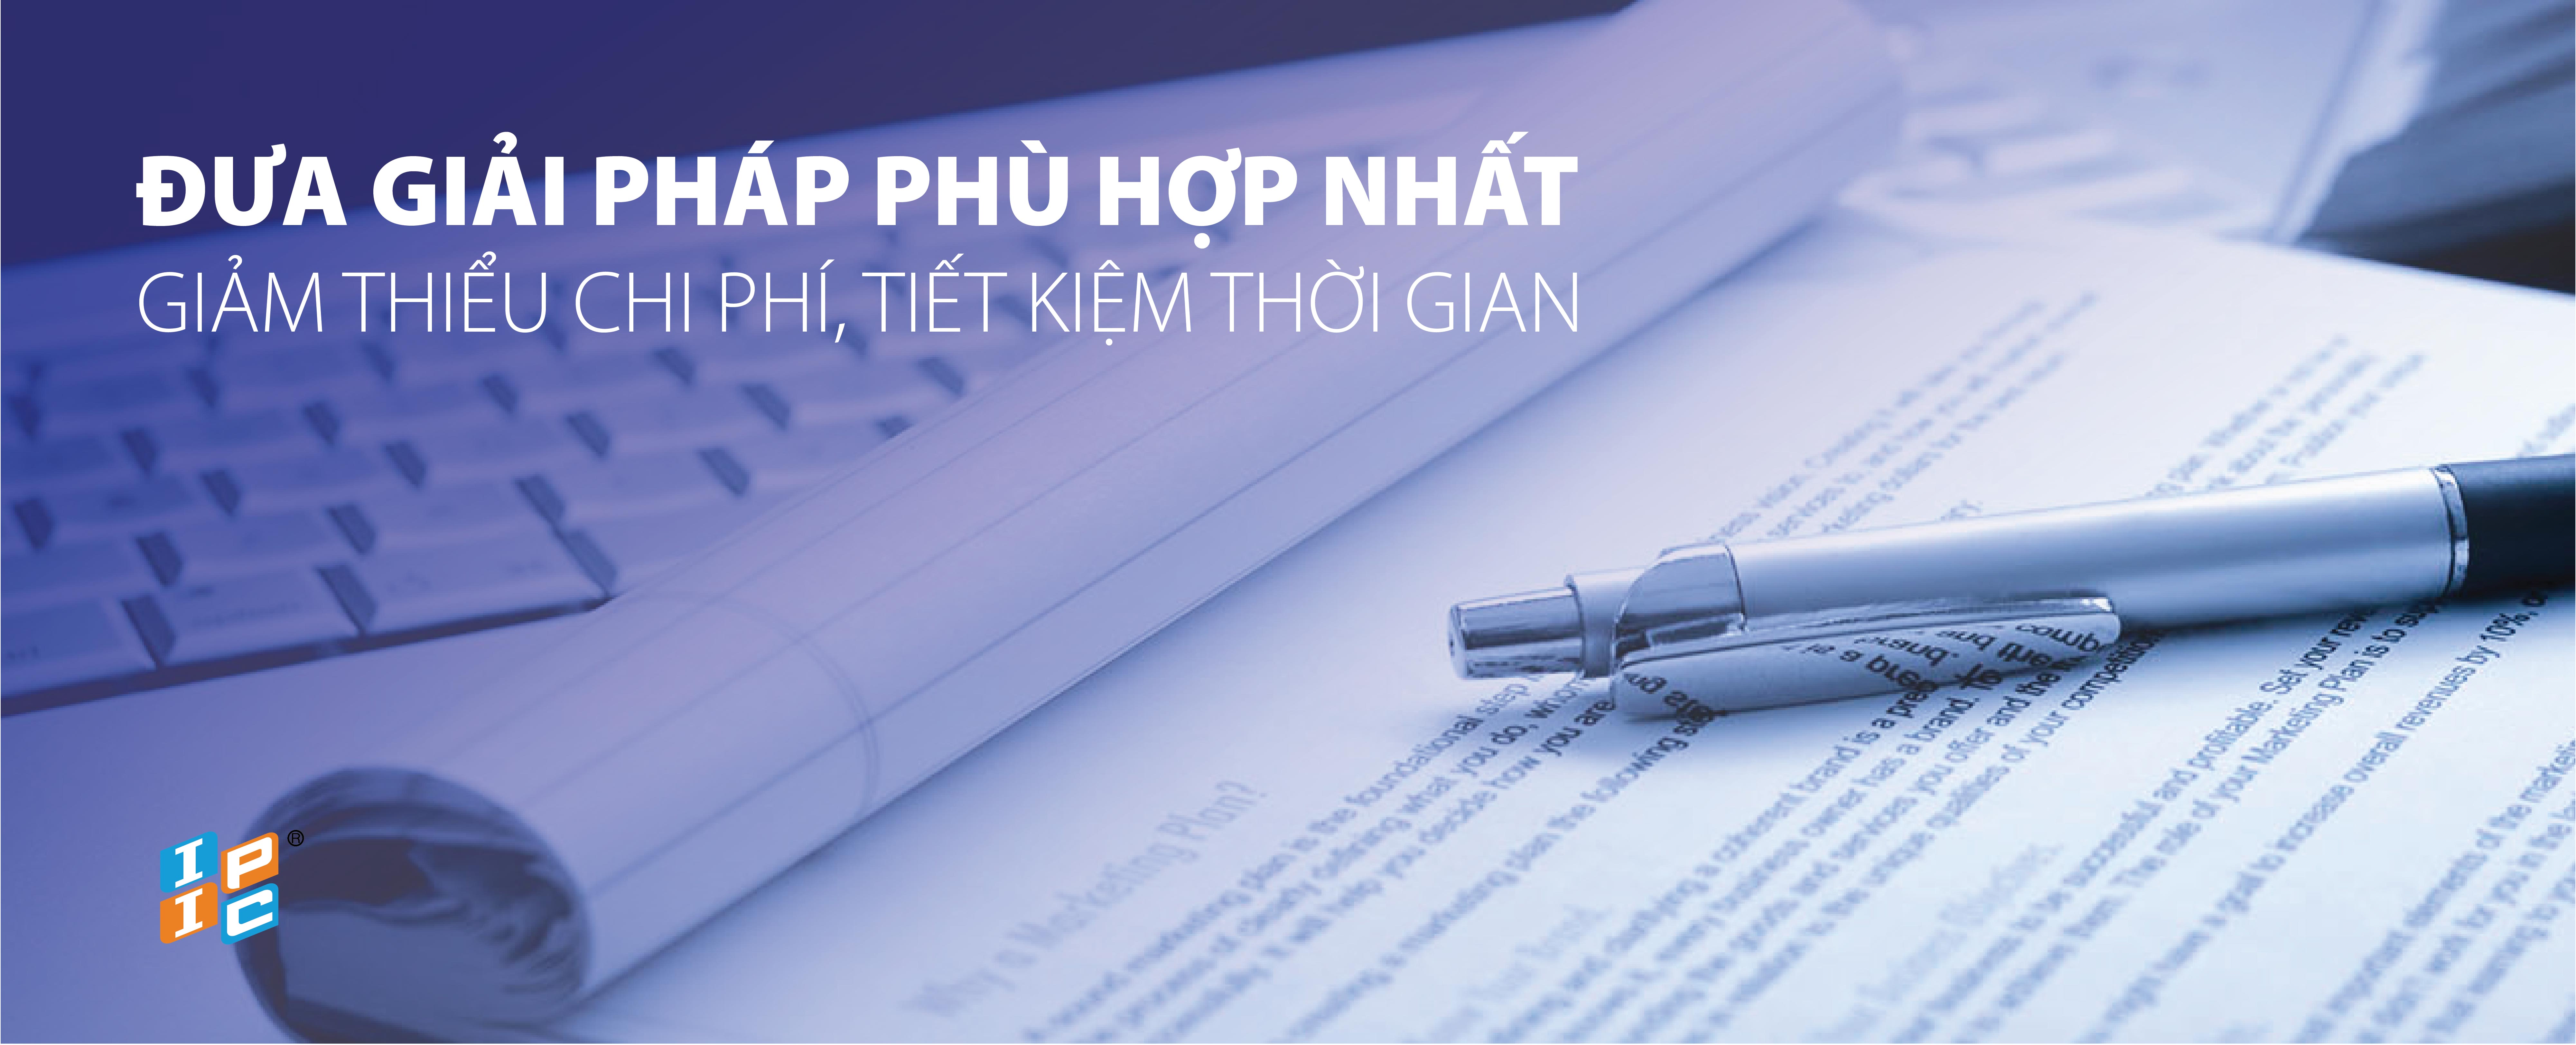 Nội dung cam kết WTO của Việt Nam về điều kiện đầu tư của nhà đầu tư nước ngoài liên quan đến dịch vụ Kiến trúc CPC 8671